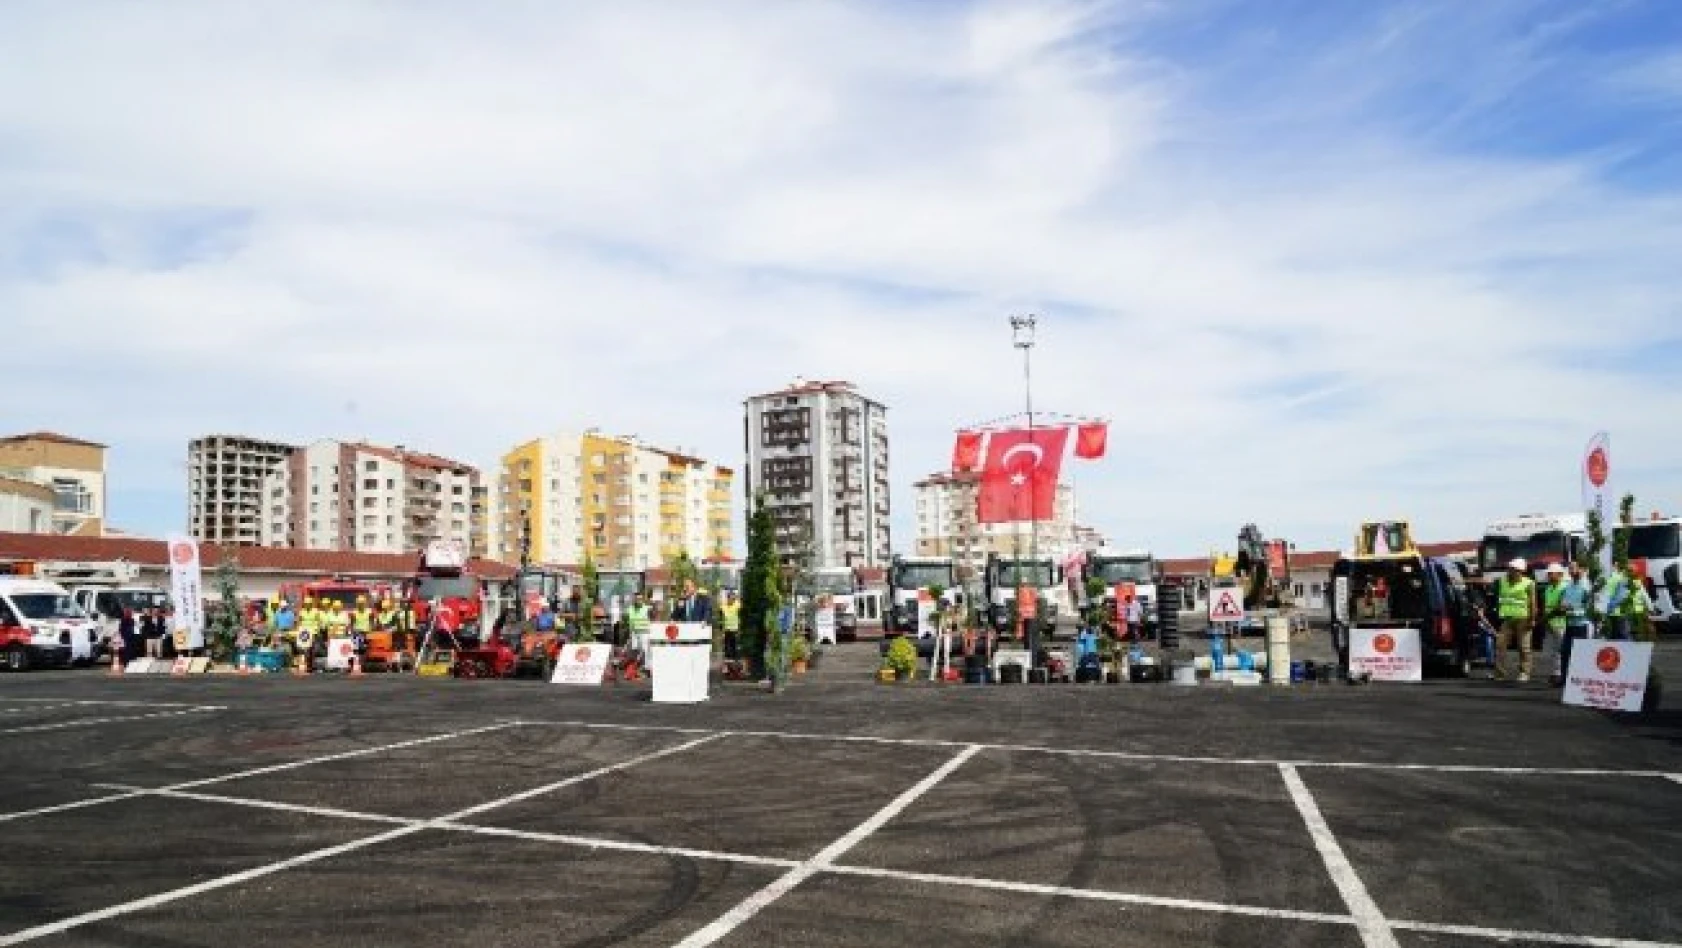 Kastamonu Belediyesi, aldığı araçların tanıtımını yaptı